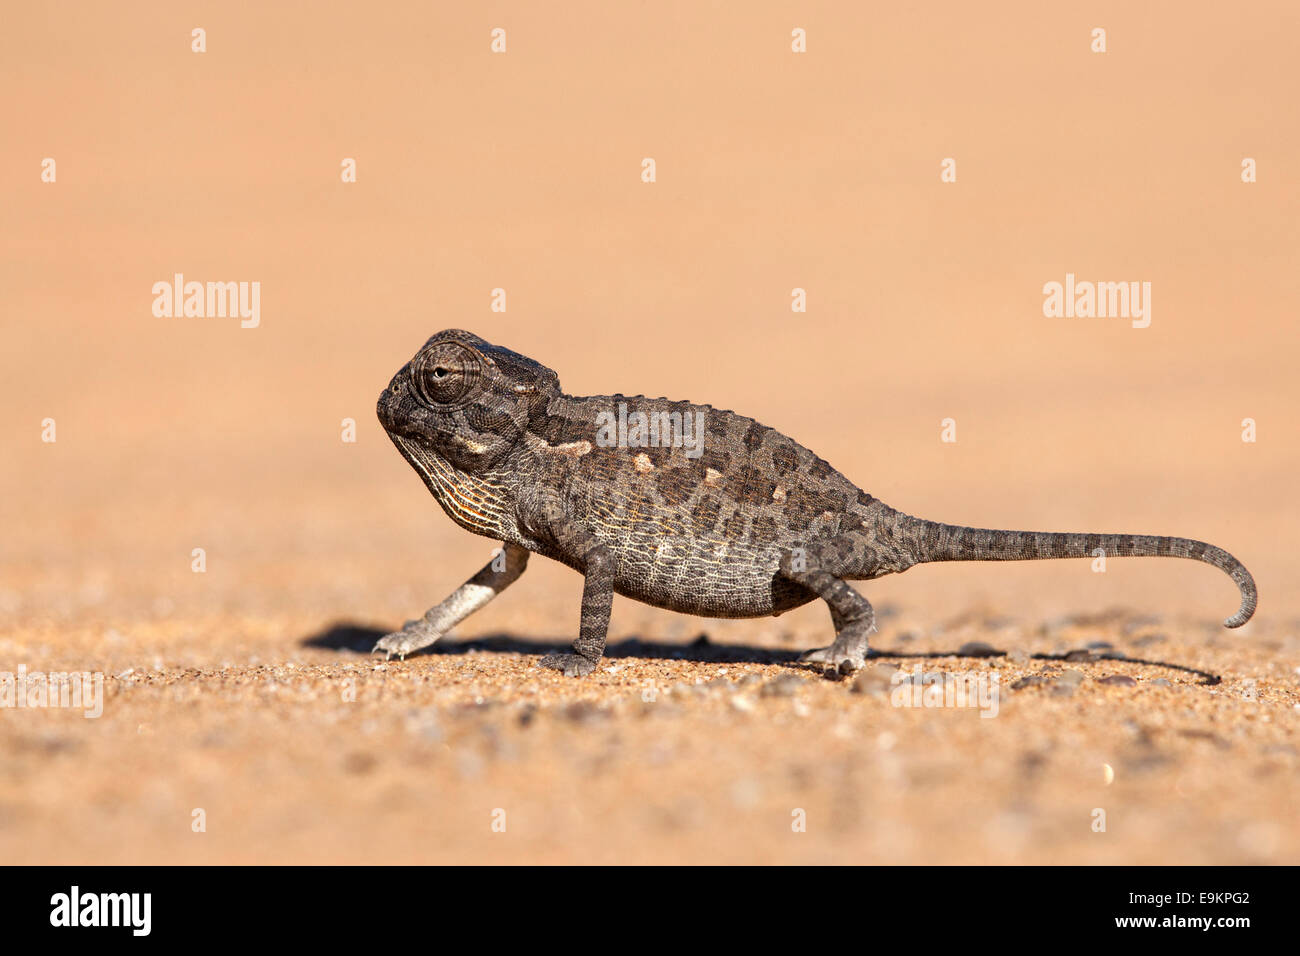 Namaqua chameleon (Chamaeleo namaquensis) baby, Namib Desert, Namibia, Stock Photo